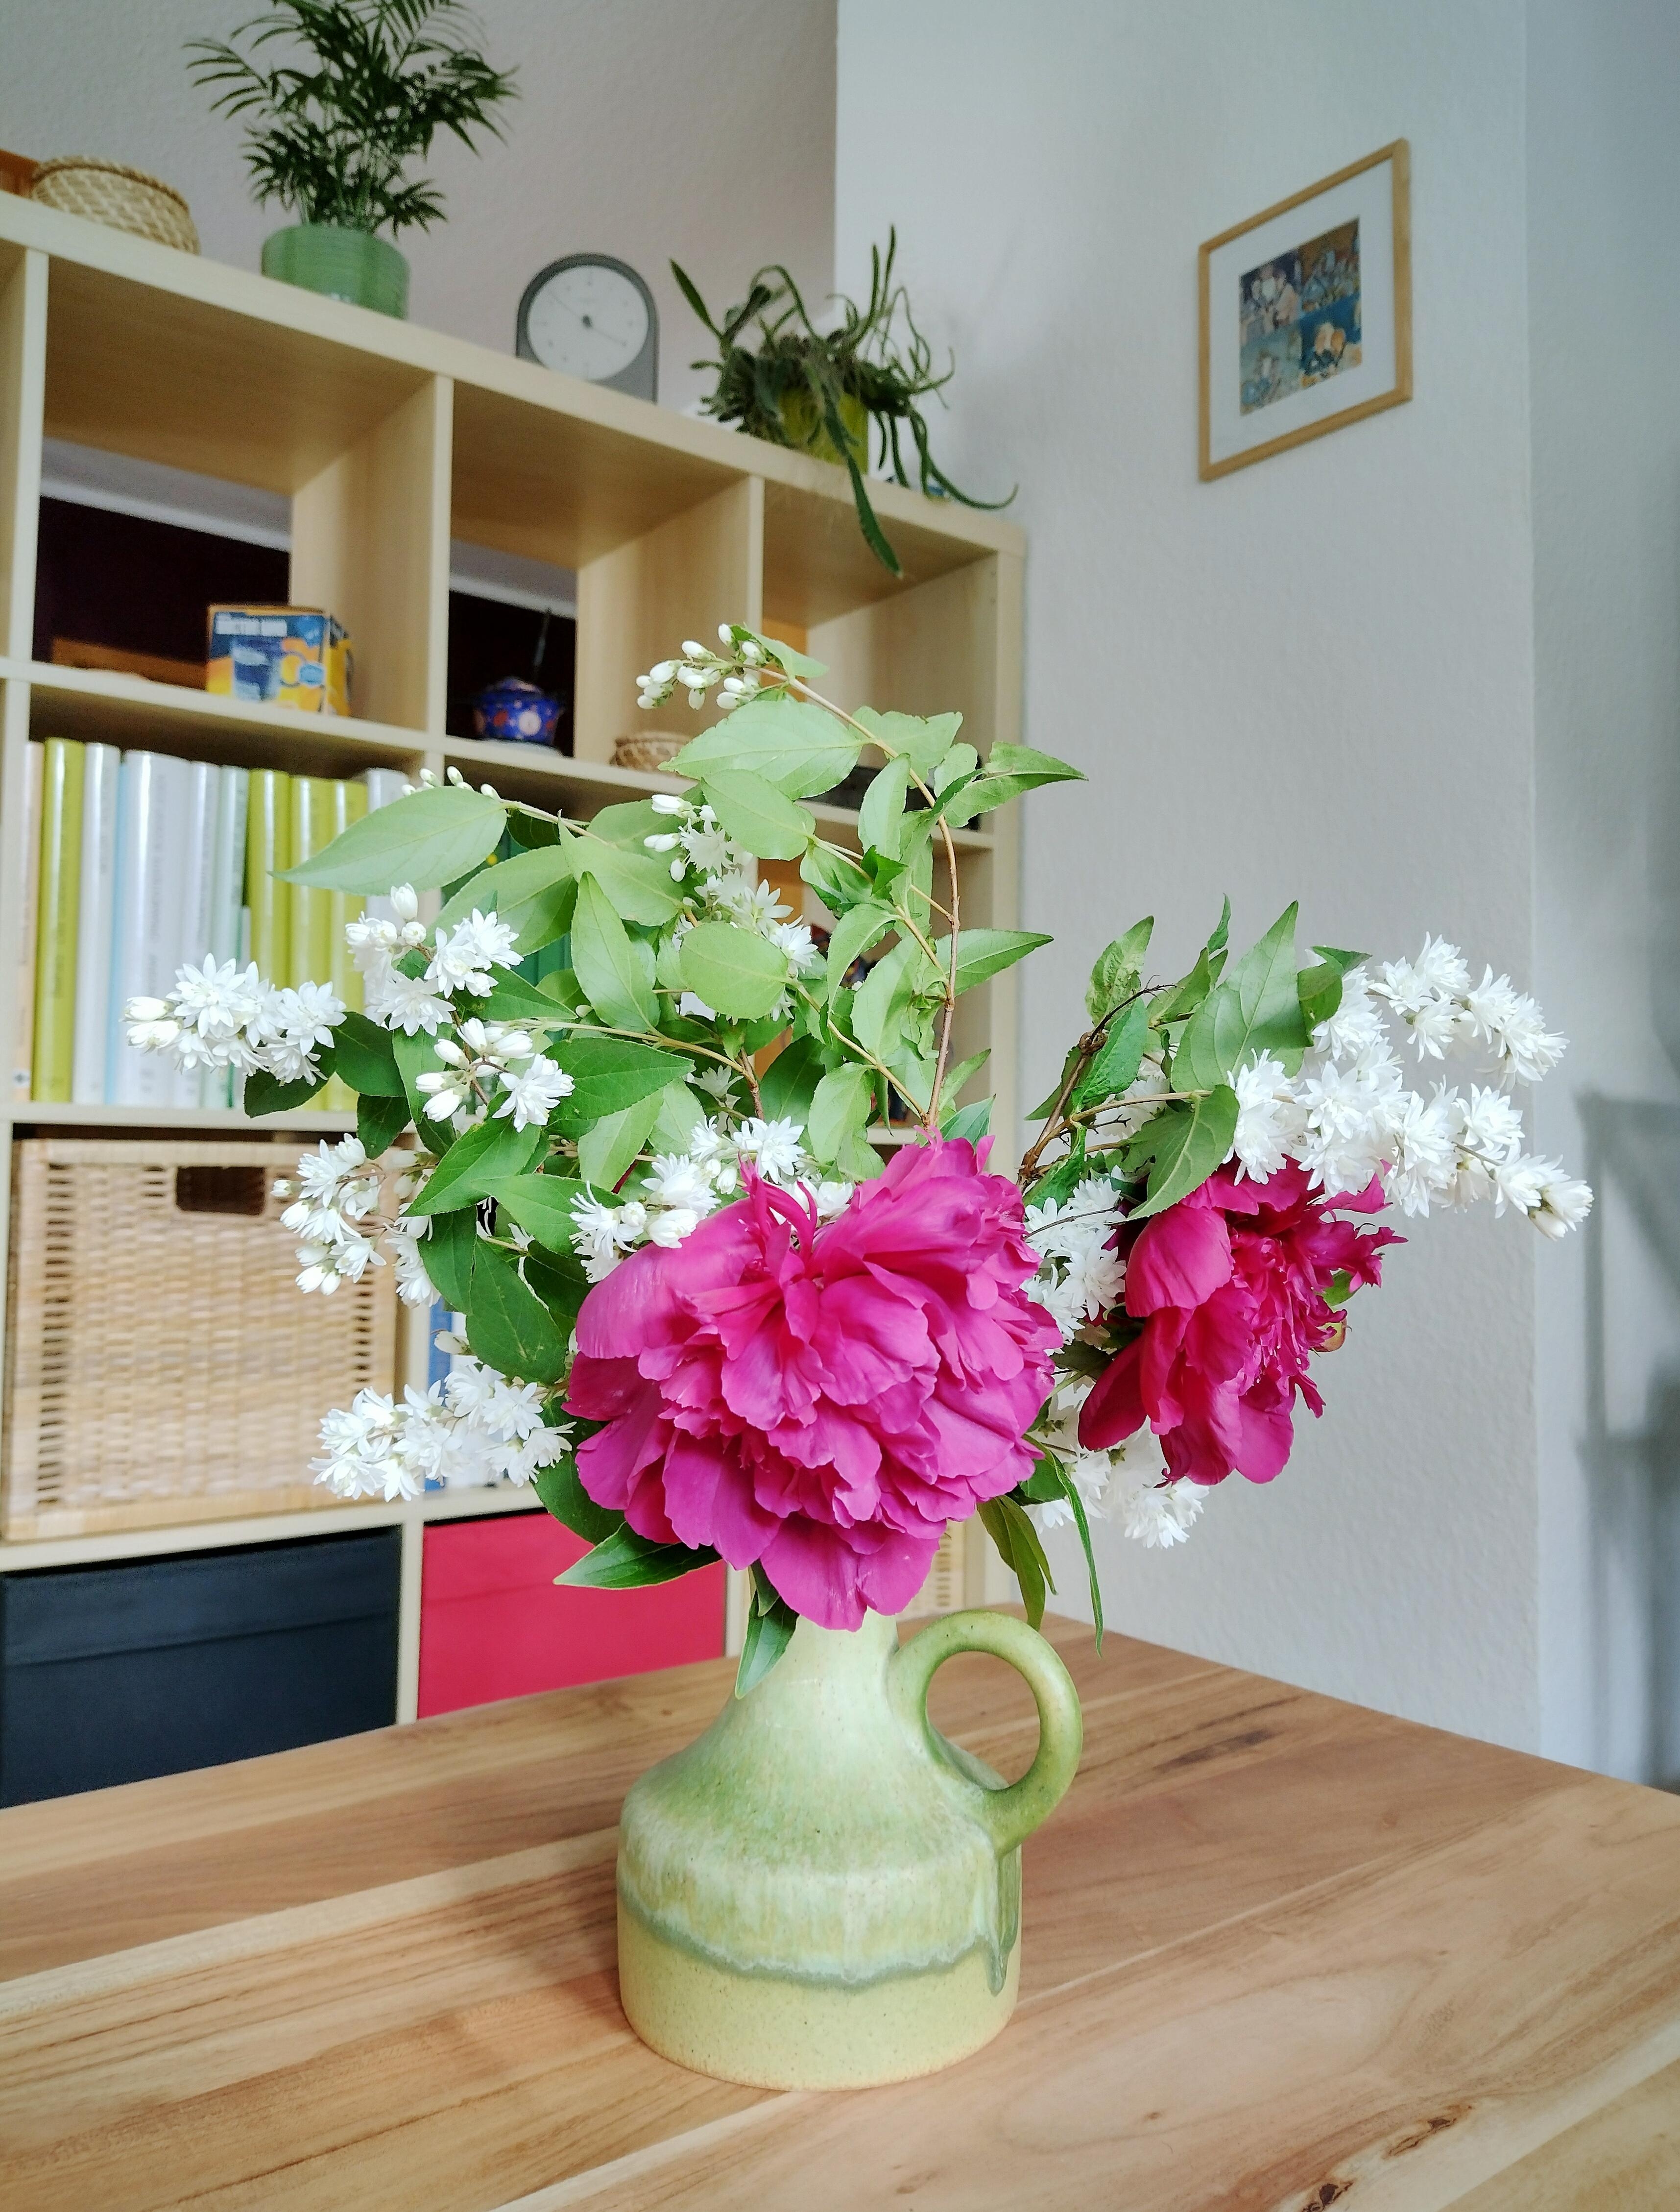 #frischeblumen #pfingstrosen #blumenliebe #vintage #vase #keramik #grün #couchtisch #trennwand #regal